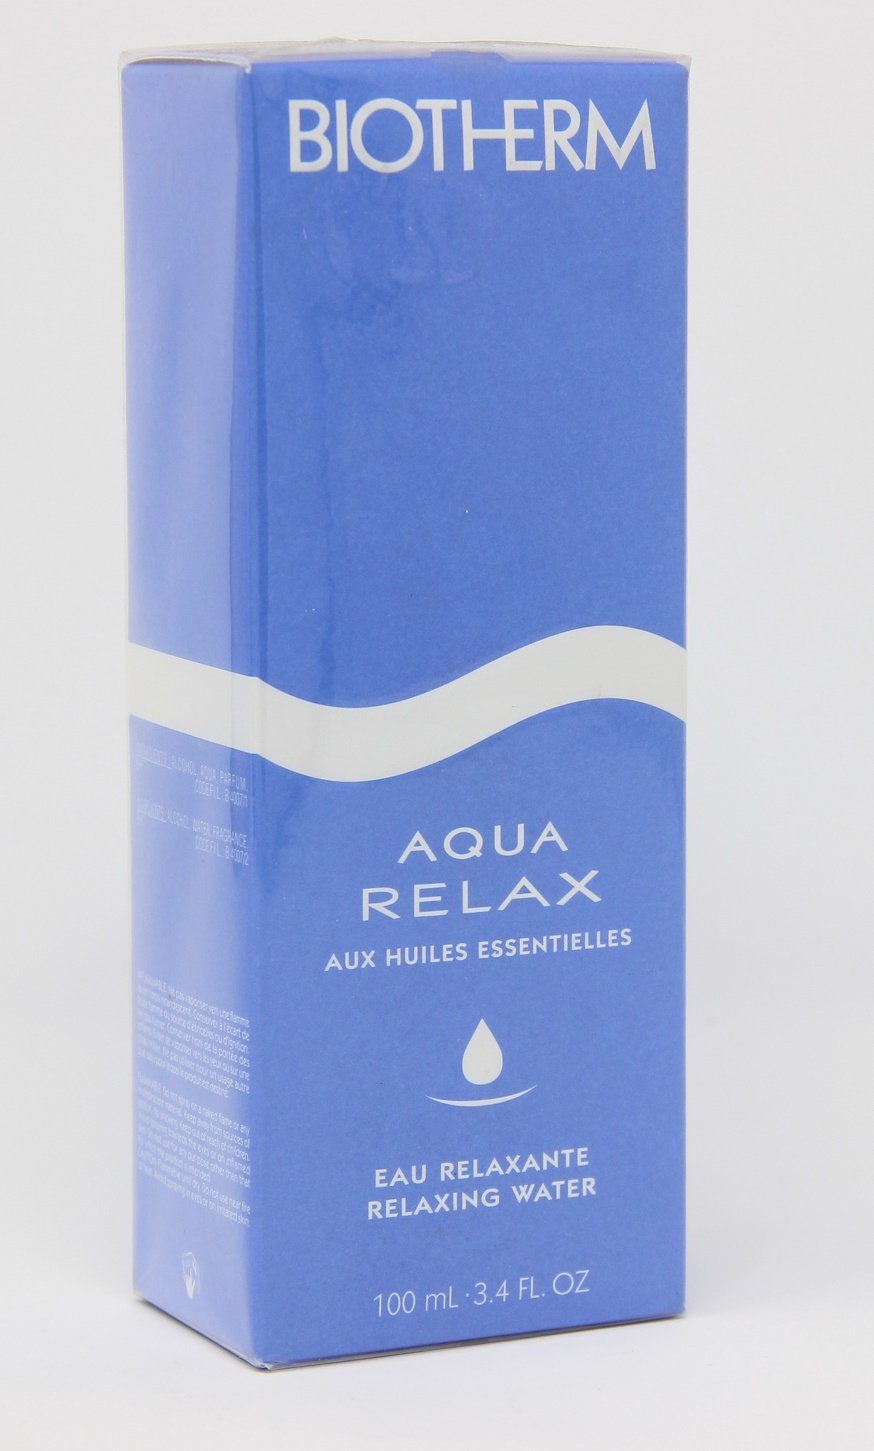 Biotherm Selbstbräunungstücher Aqua water relaxing BIOTHERM Relax essential 100ml oils